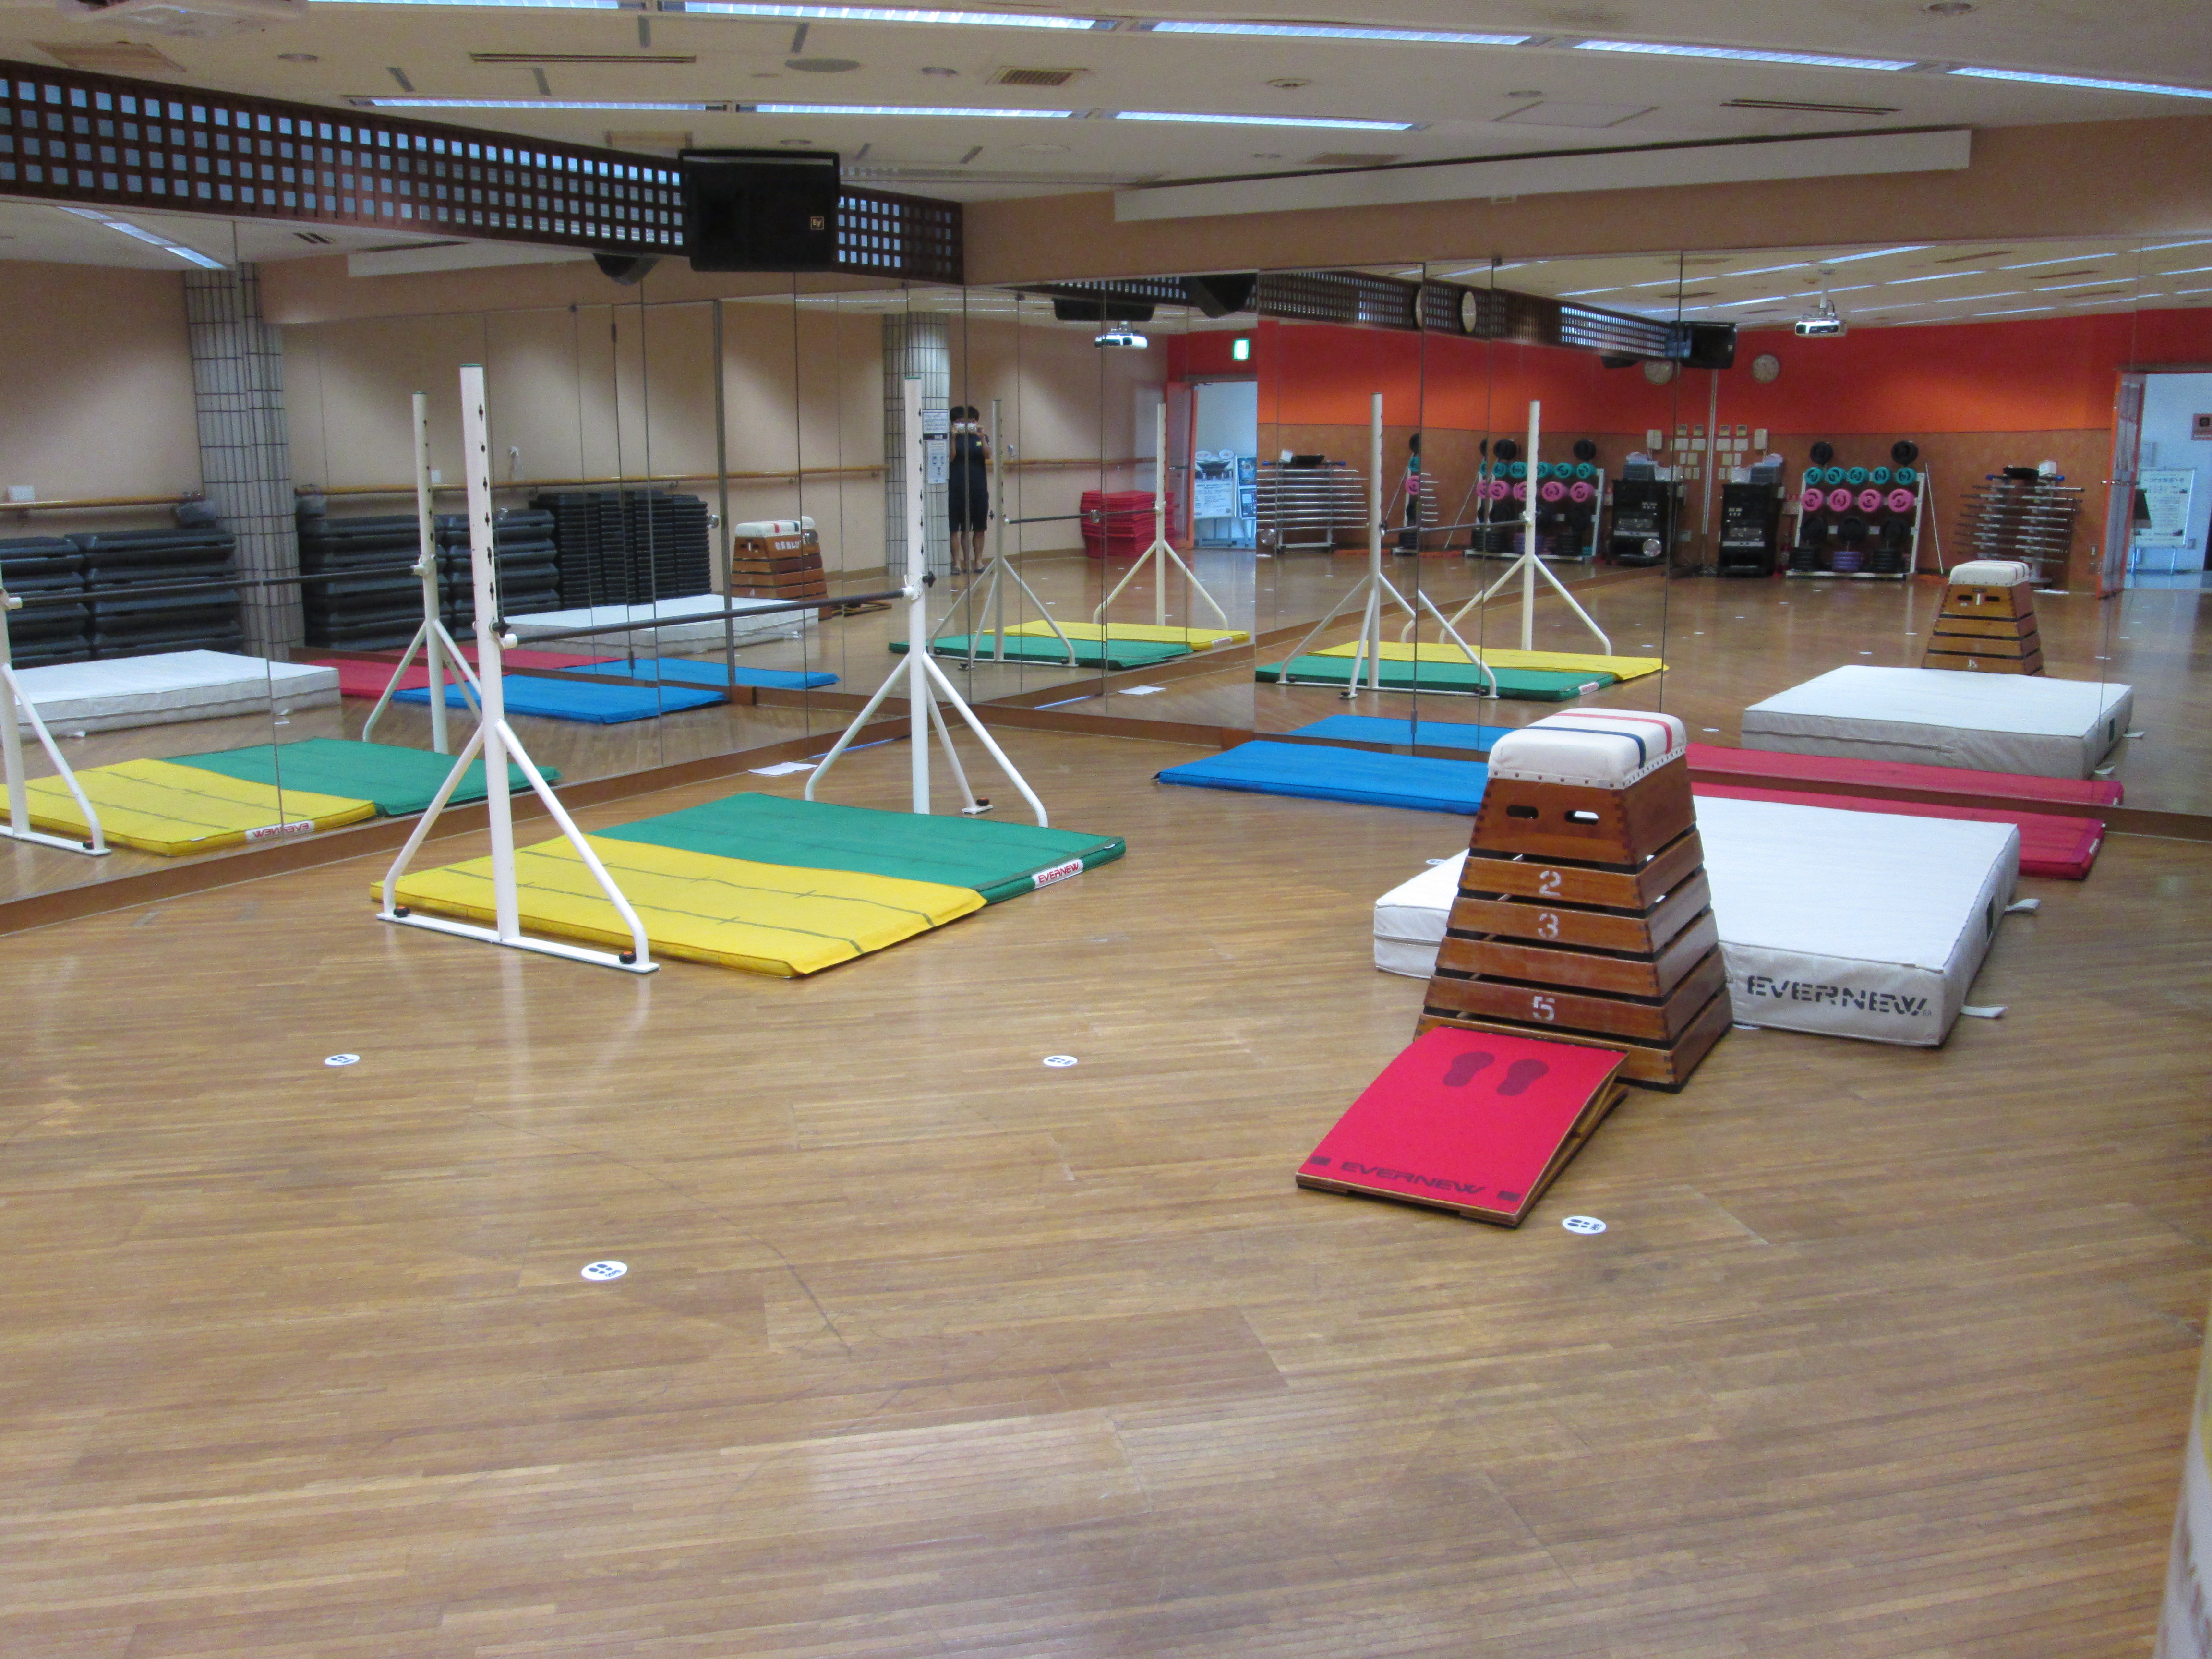 スタジオ（体育スクール使用時）　　　　　　　　　　　　　　　　　　　　　　　　　　　　　　　　　　　　　　　　　　　　　　　　　　　　スタジオ内にてマット・跳箱・鉄棒の練習を行います。